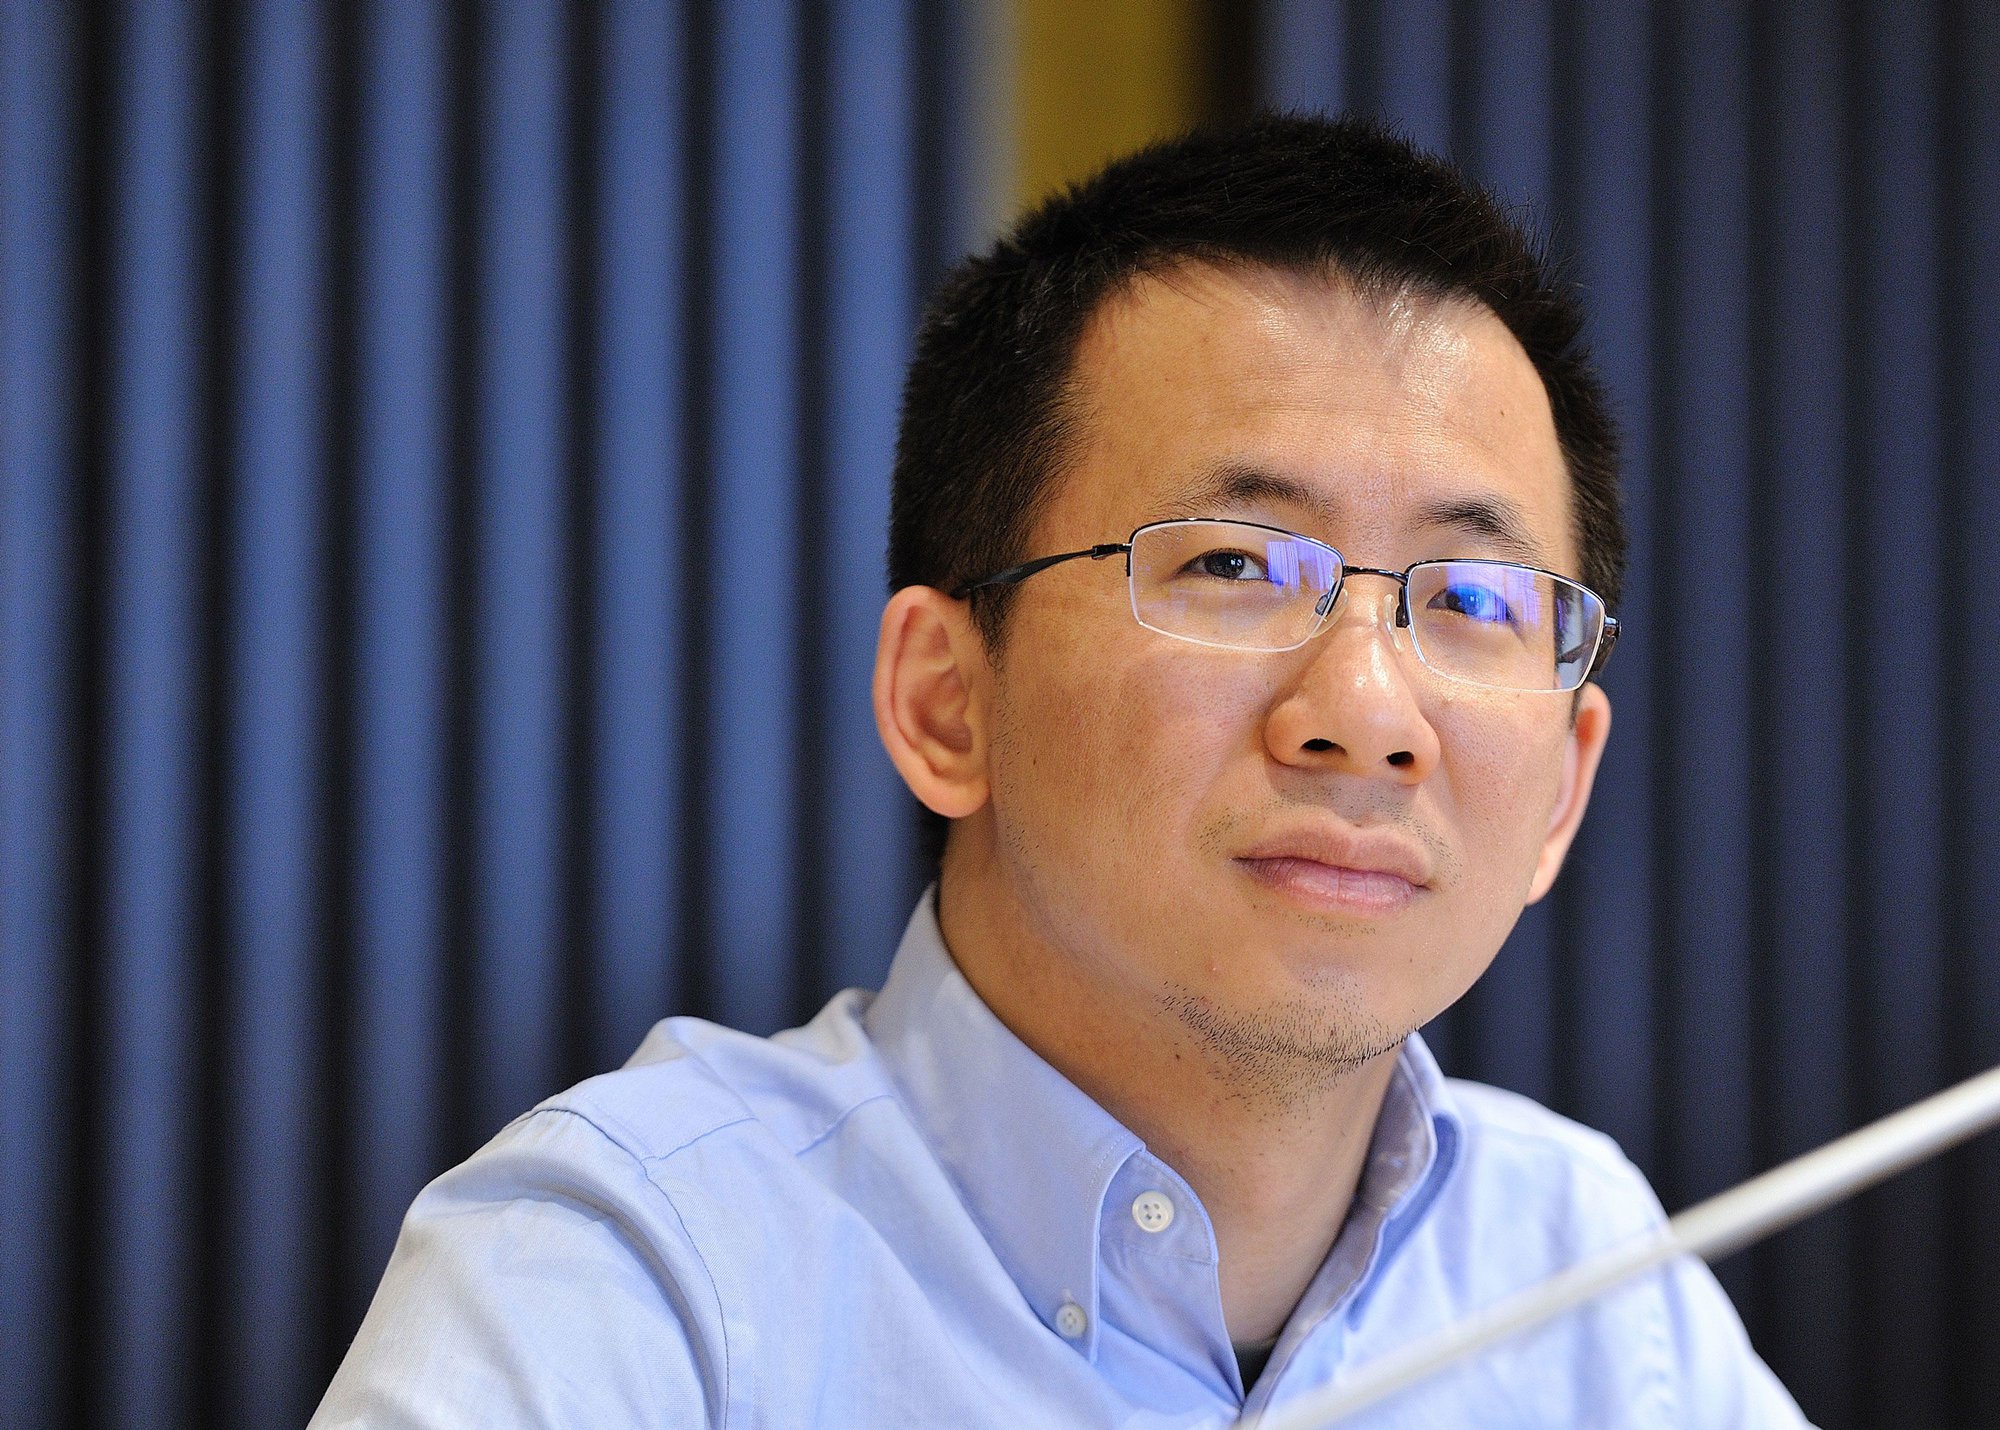 Sản phẩm đầu tiên của Zhang và ByteDance là một ứng dụng tổng hợp tin tức có tên là Toutiao. Ảnh: @AFP.